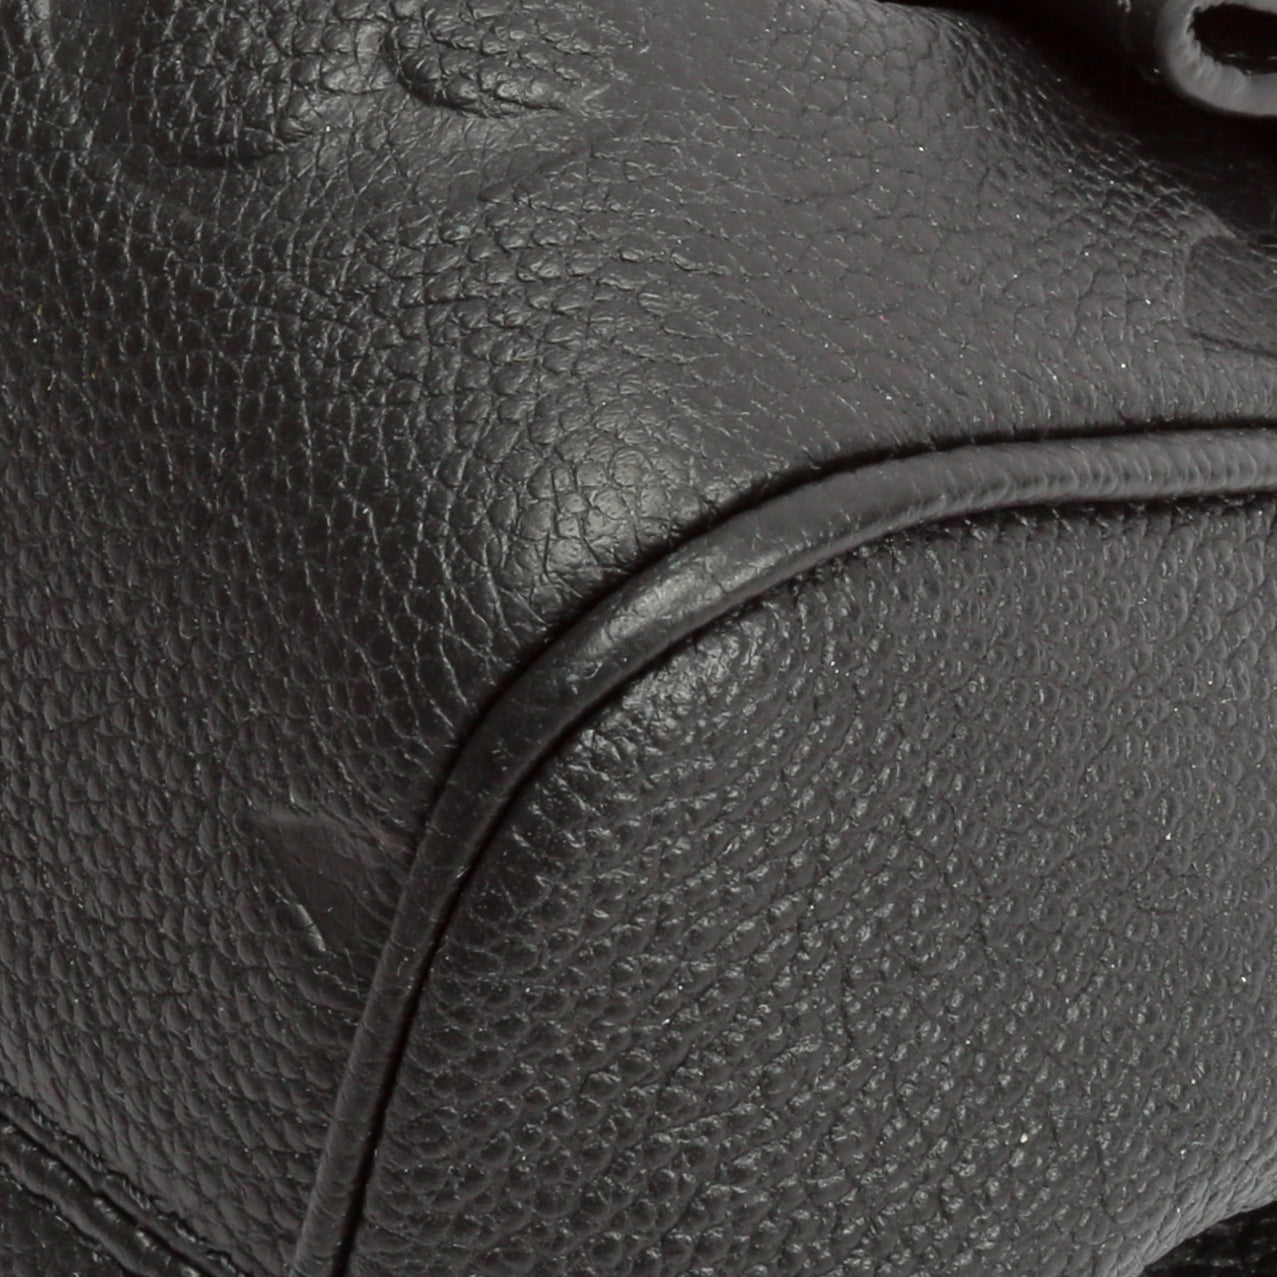 Louis Vuitton Black Monogram Giant Empreinte Leather Favorite MM Bag Louis  Vuitton